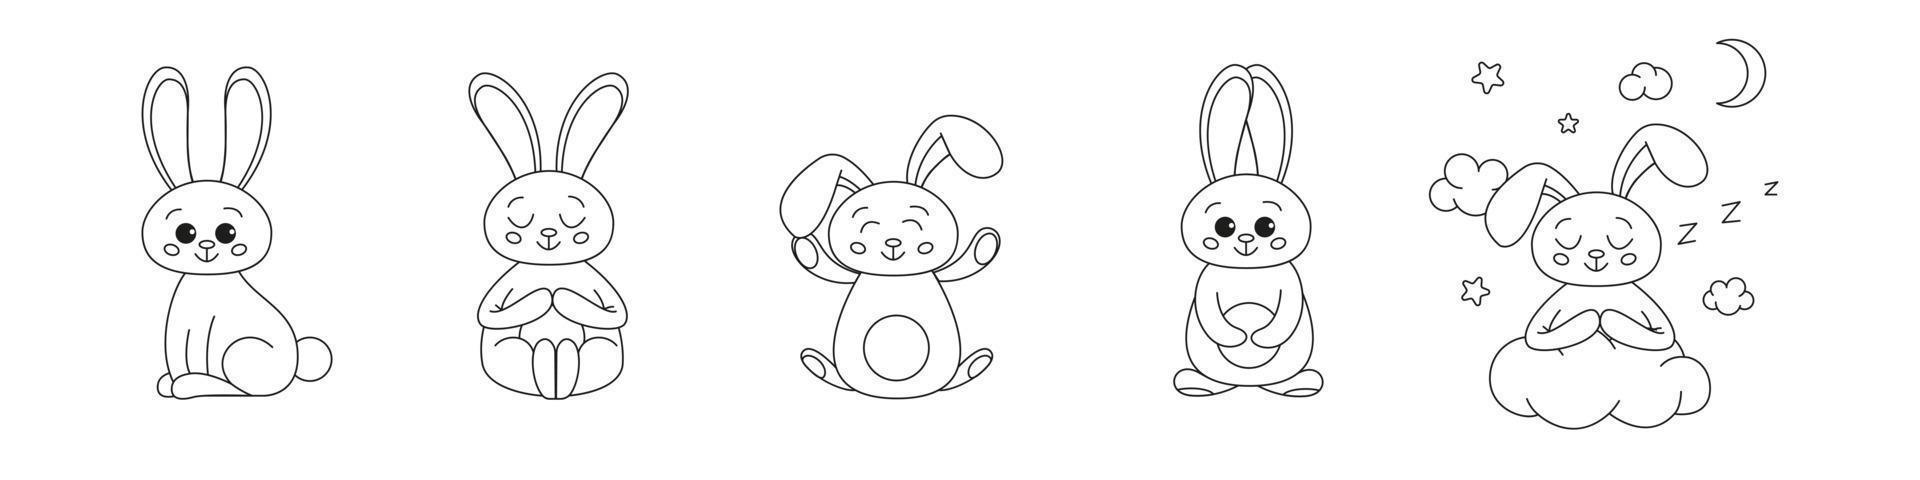 conjunto de coelhos de contorno fofo, coelho para colorir. coelhos coelhos desenhos animados esboço livro para colorir ou página para crianças. feliz páscoa em estilo doodle. vetor de ilustração.